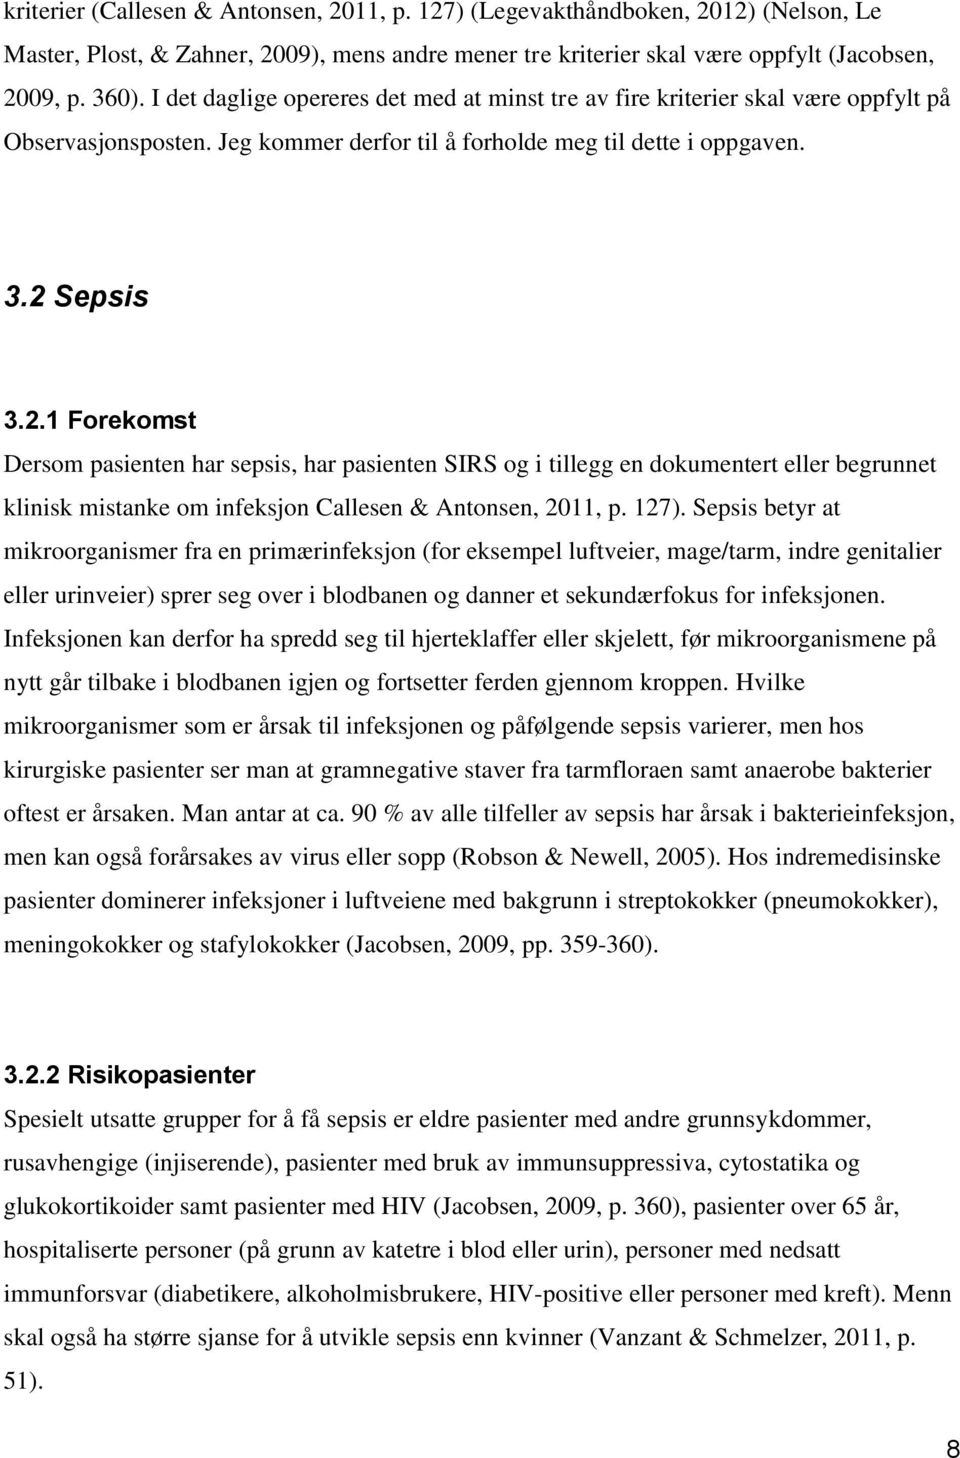 Sepsis 3.2.1 Forekomst Dersom pasienten har sepsis, har pasienten SIRS og i tillegg en dokumentert eller begrunnet klinisk mistanke om infeksjon Callesen & Antonsen, 2011, p. 127).